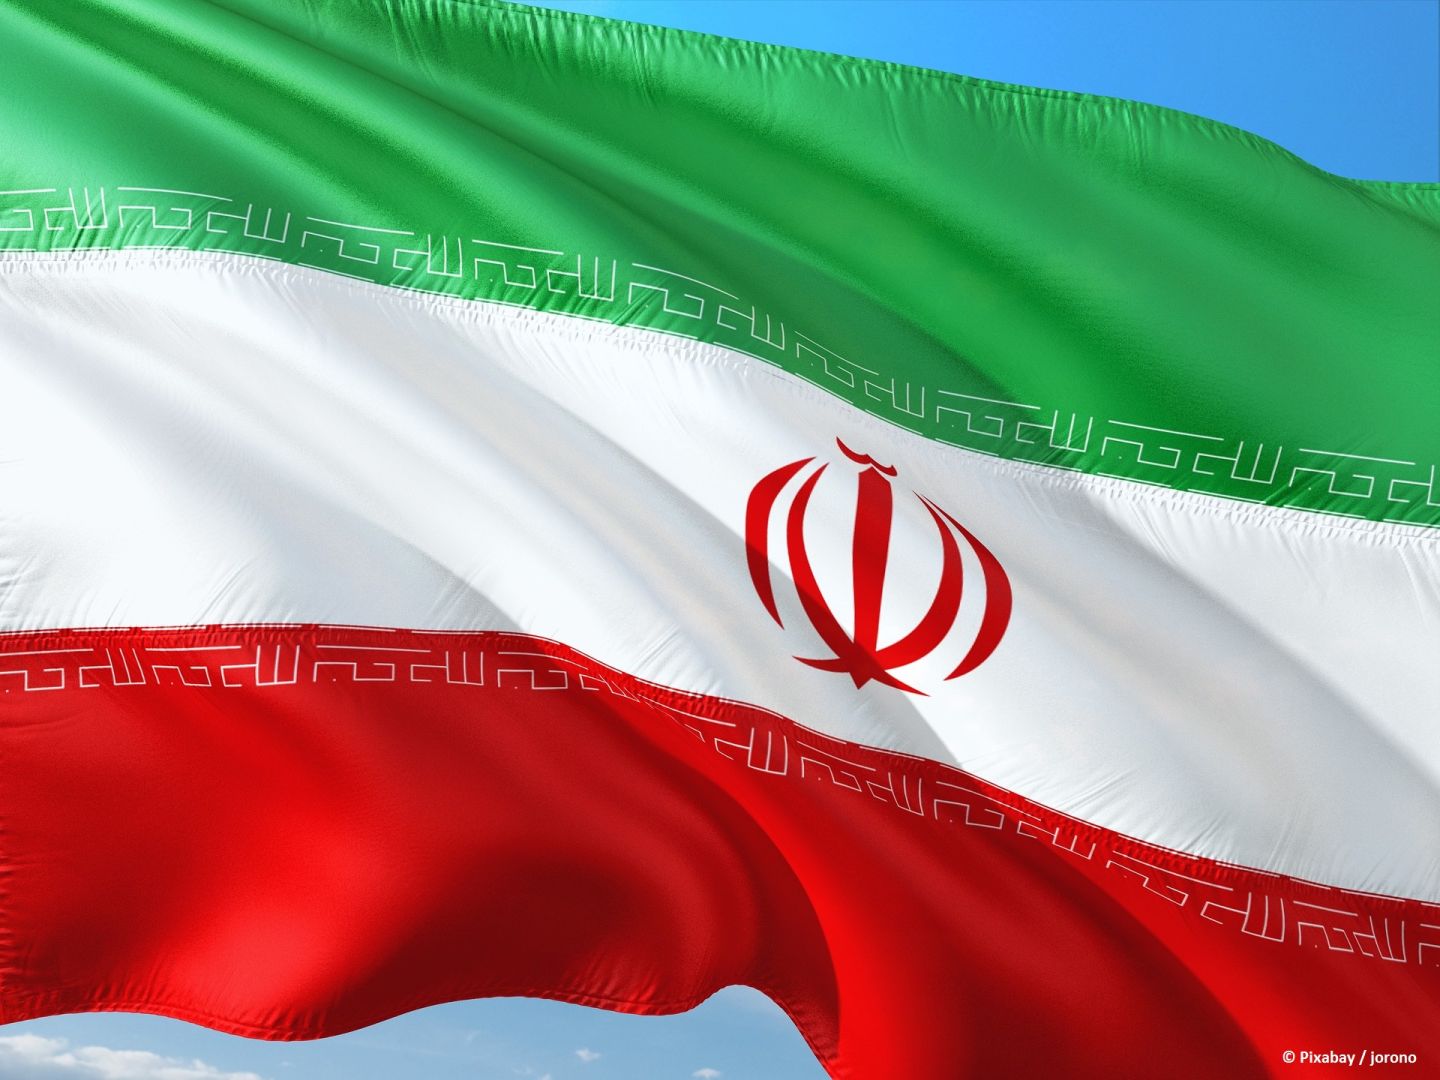 Iranische Botschafter nach Berlin, Paris, Brüssel und London einbestellt